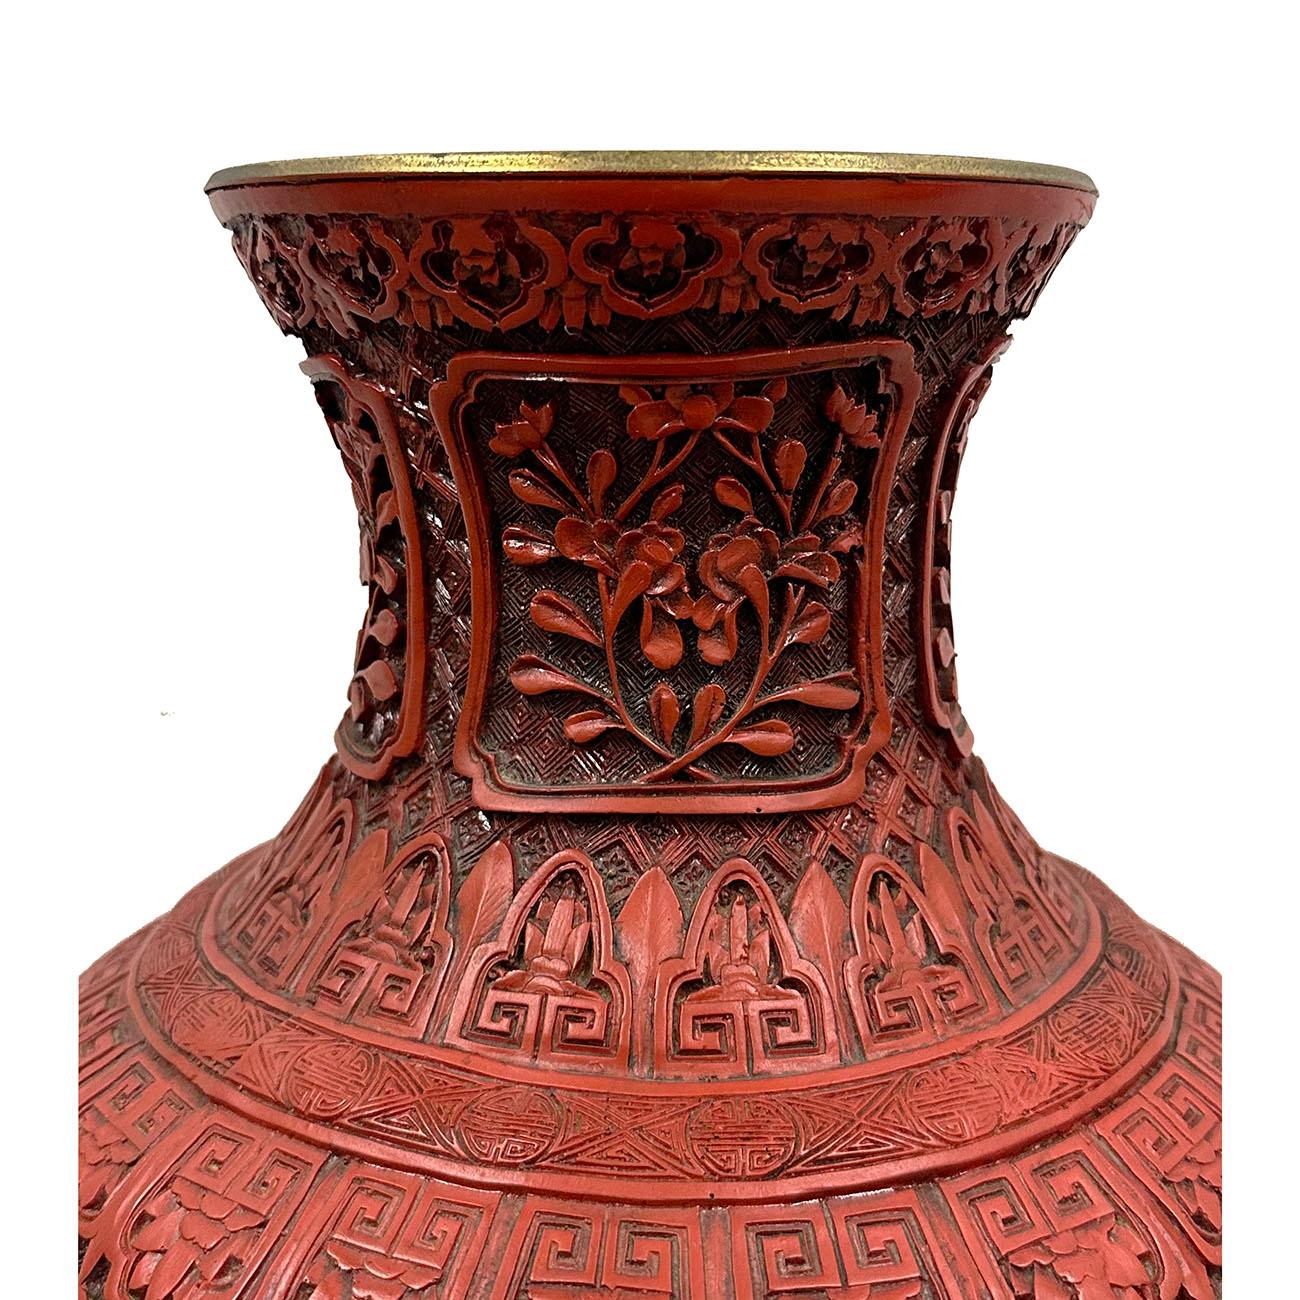 Diese Vase wurde in der Mitte des 20. Jahrhunderts in Peking hergestellt. Es ist sehr einzigartig mit komplizierten Schnitzarbeiten der Landschaftsgestaltung und Zeichen.  Die Verarbeitung ist hervorragend. Es ist sehr selten, dass es nicht allzu